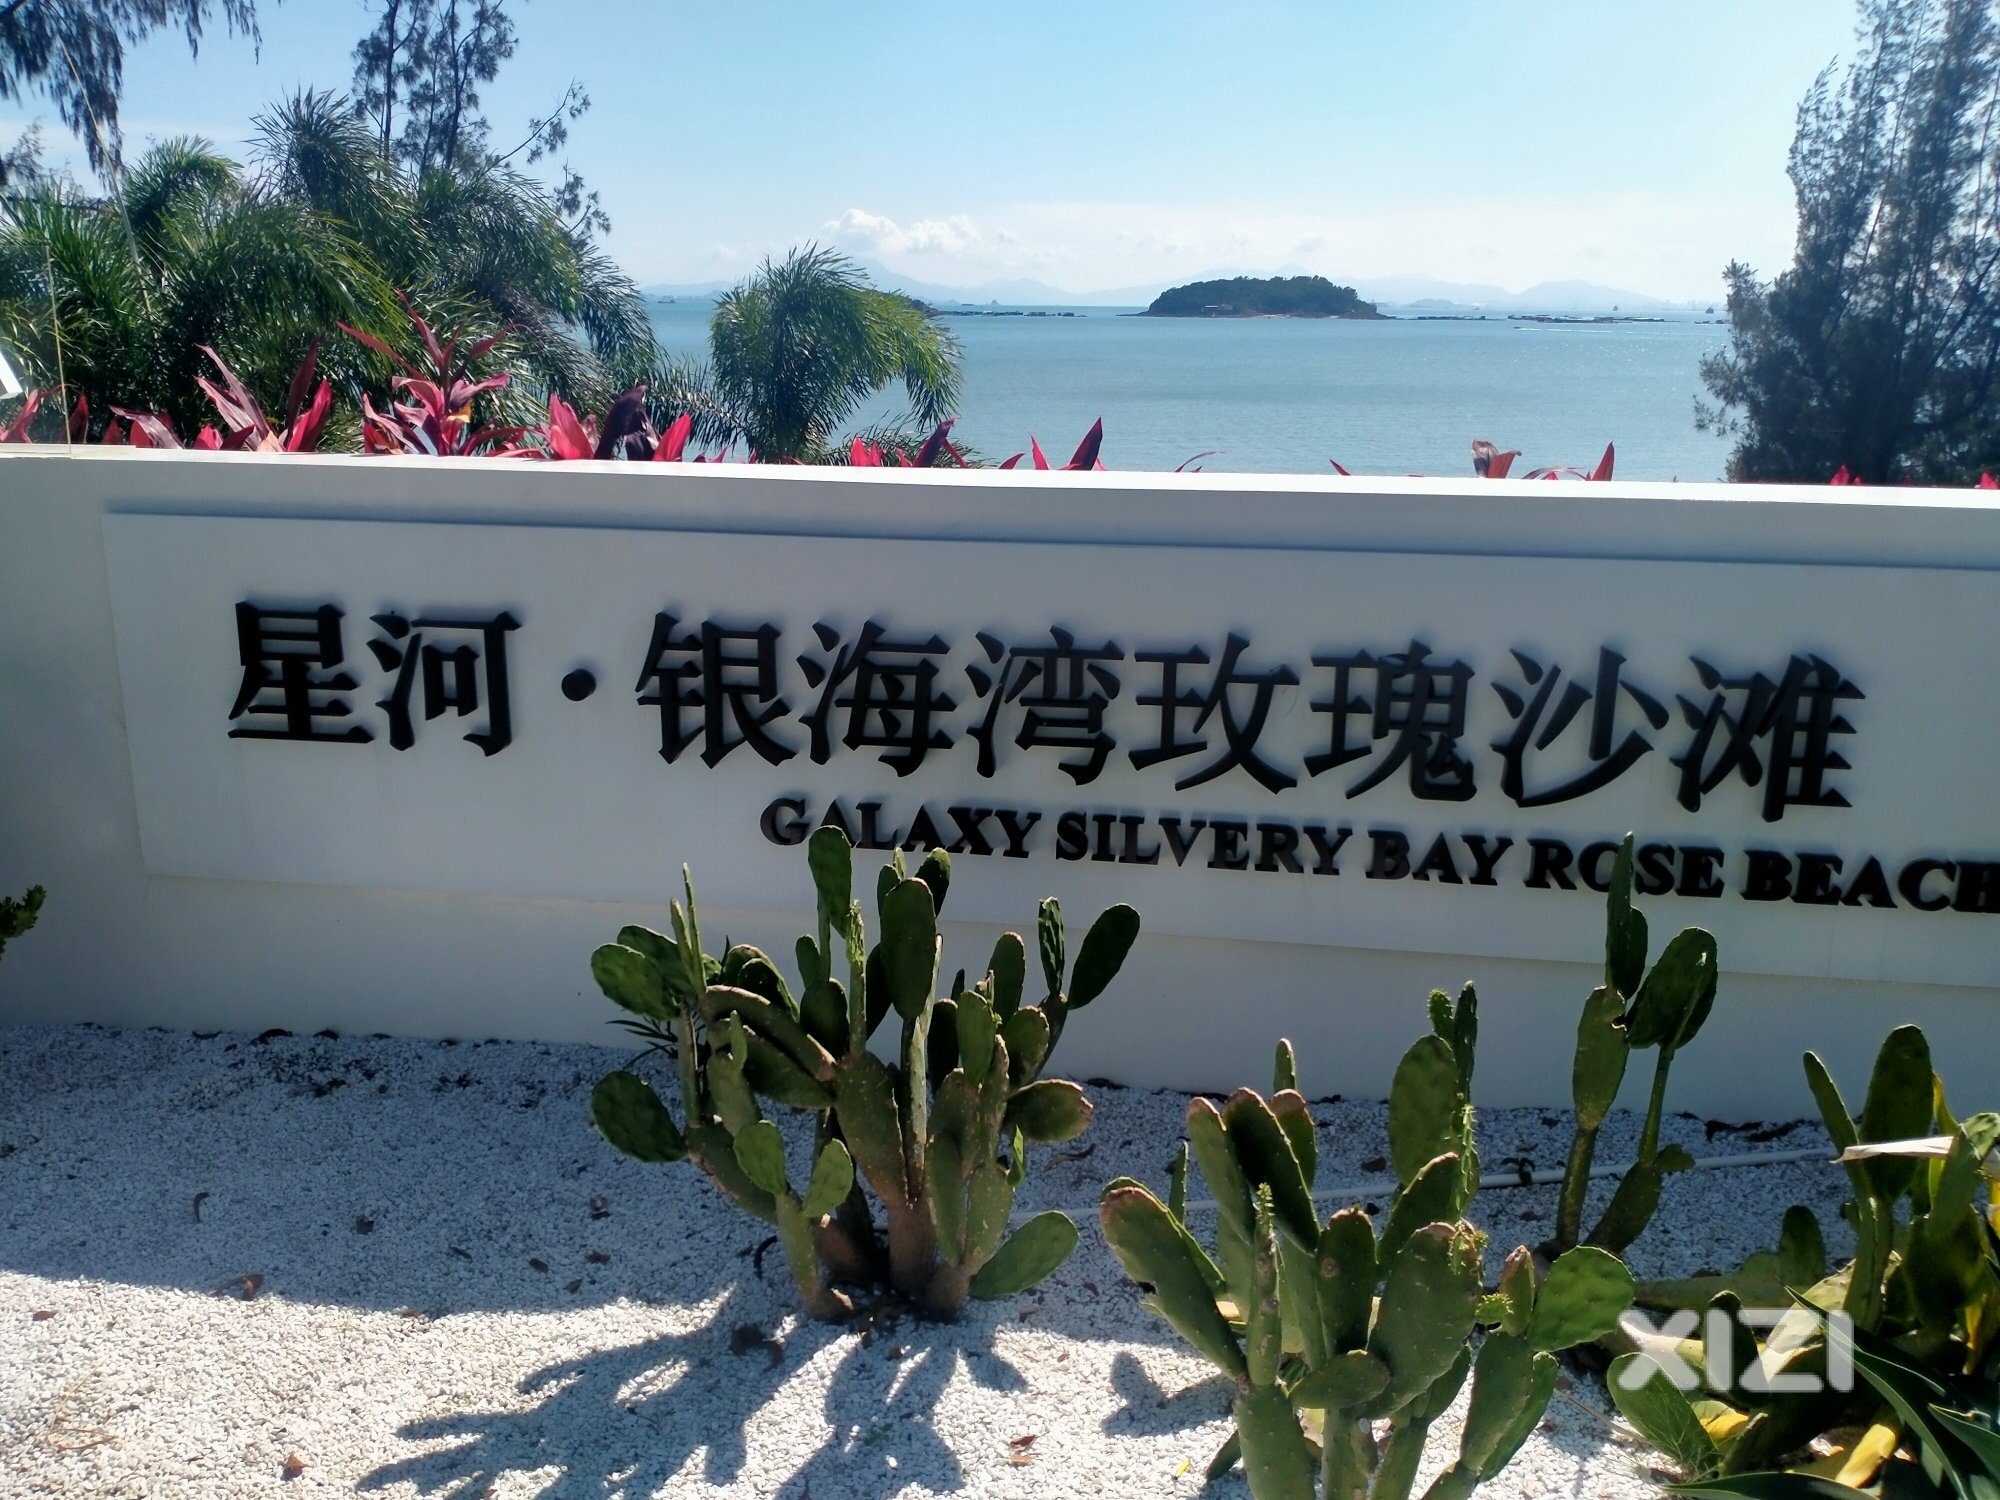 惠东这个海滩:银海滩。奔这个潮汕人买下了